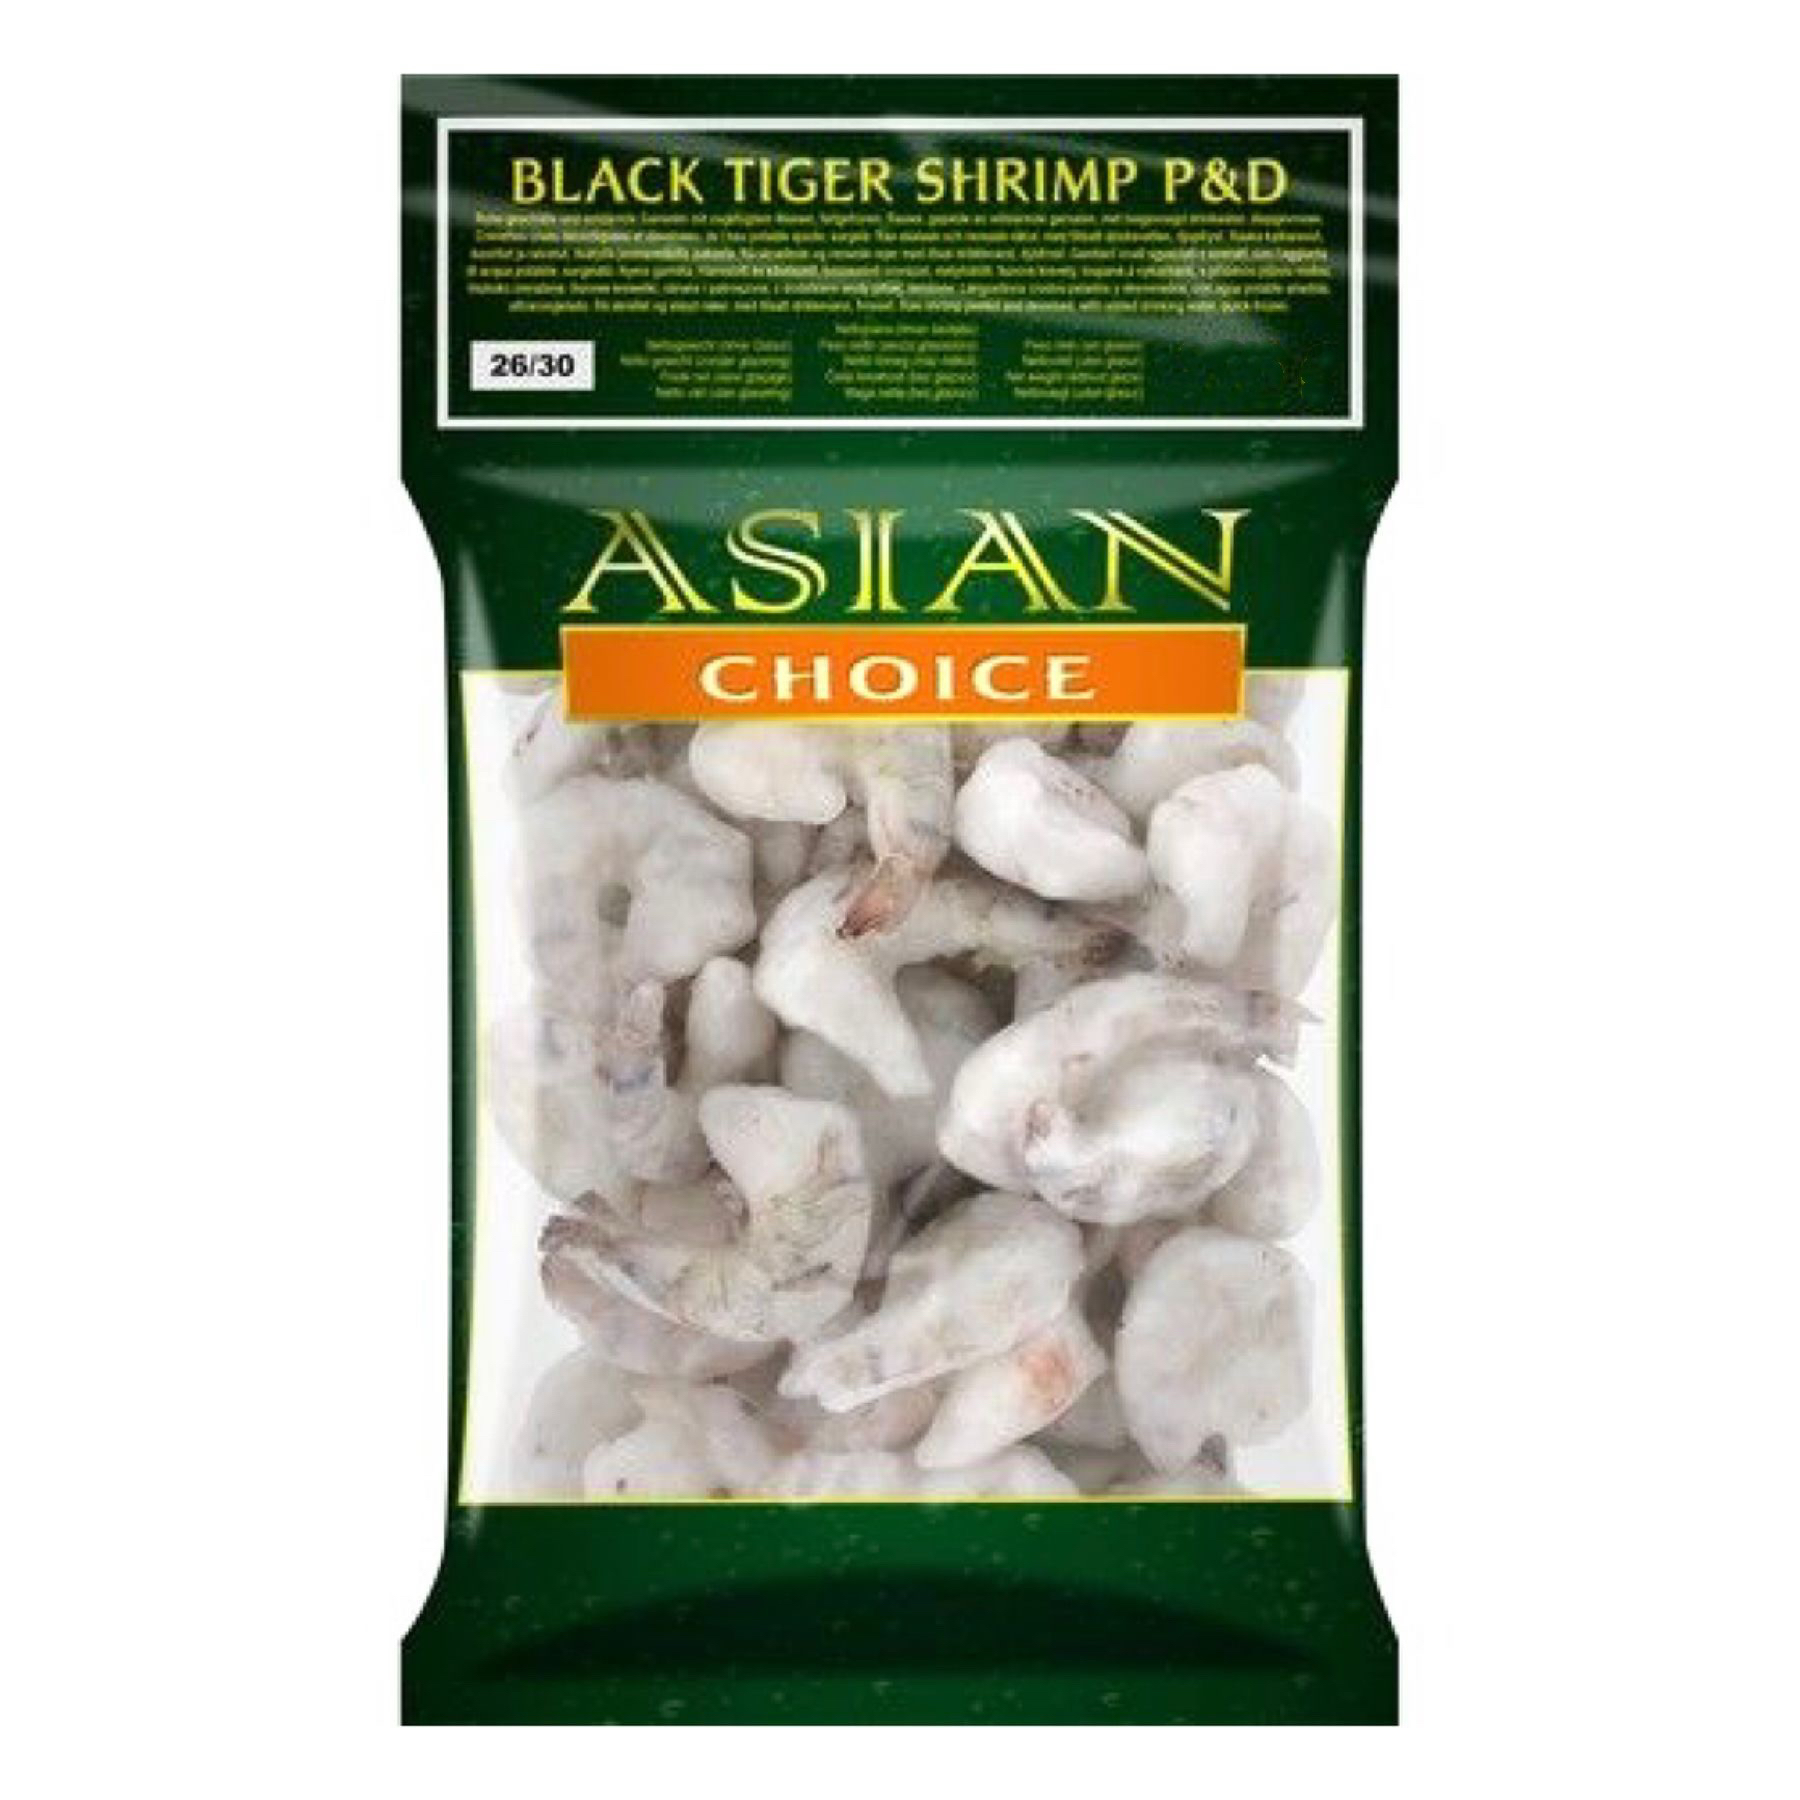 Asian Choice BT P&D Shrimp 8/12